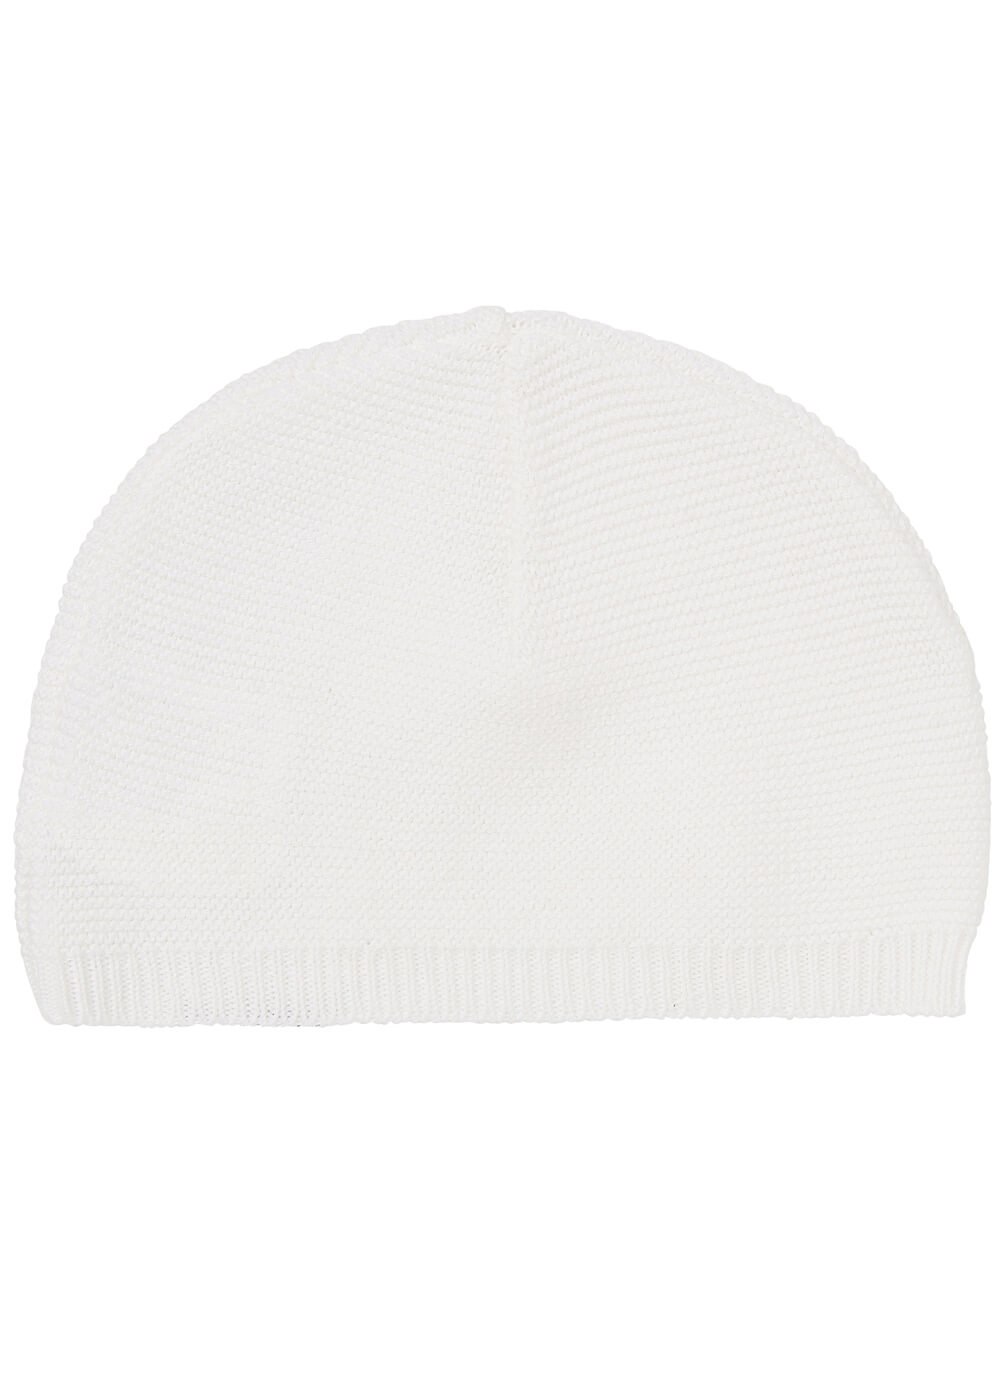 Rosita Organic Cotton Knit Newborn Hat in White by Noppies Baby